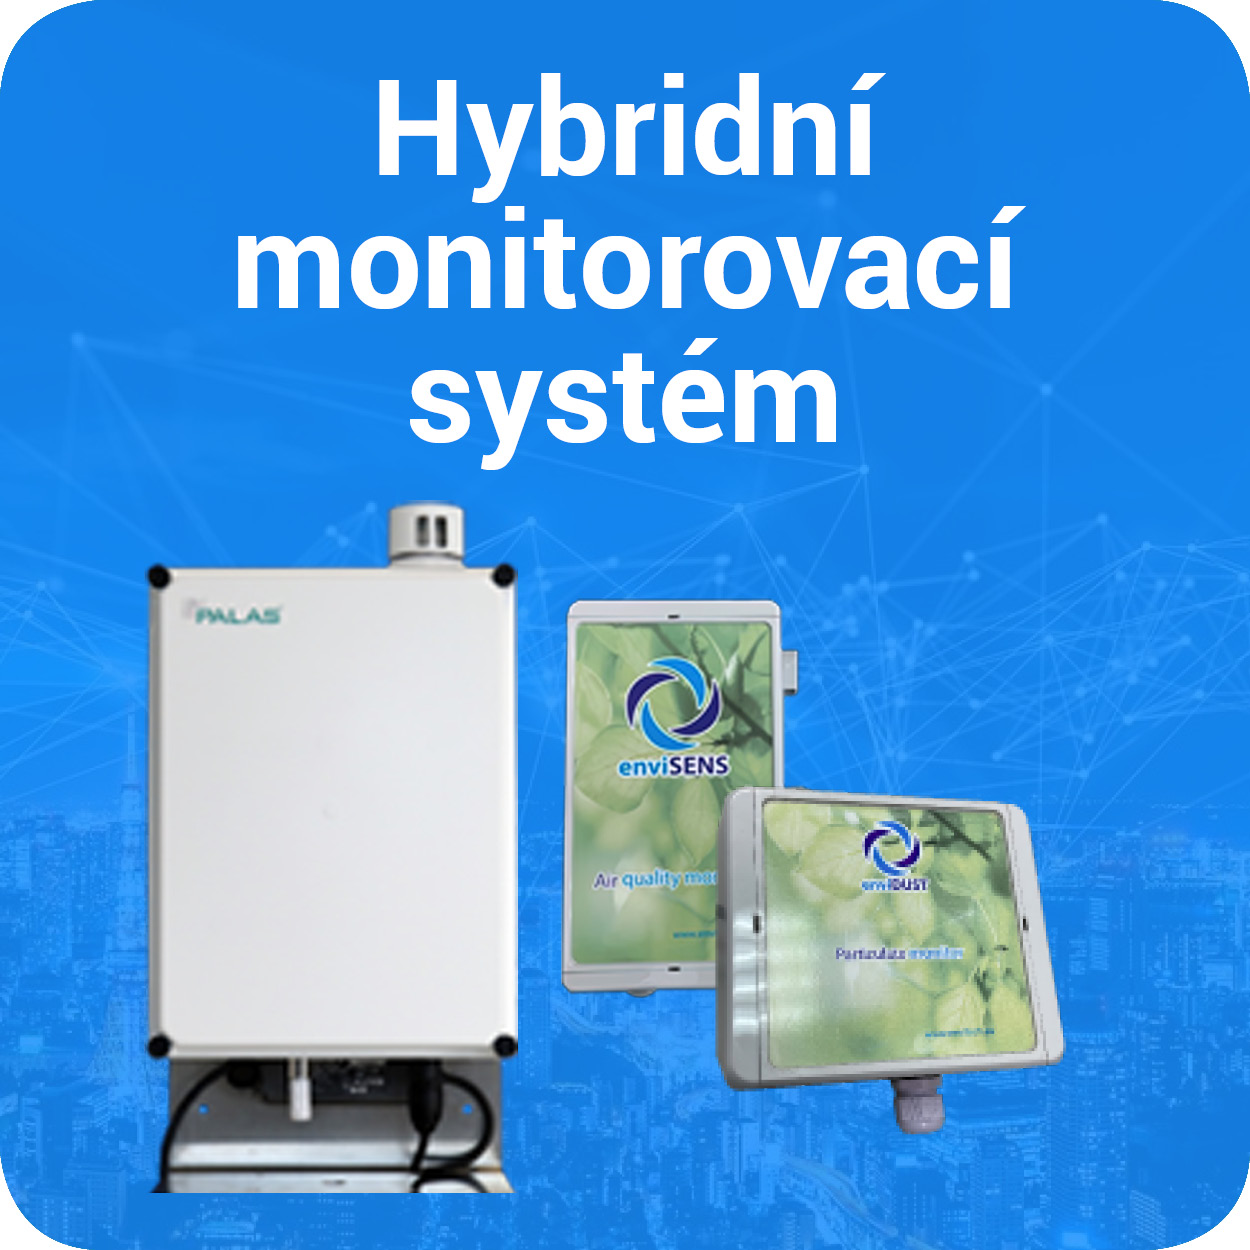 Hybridní monitorovací systém